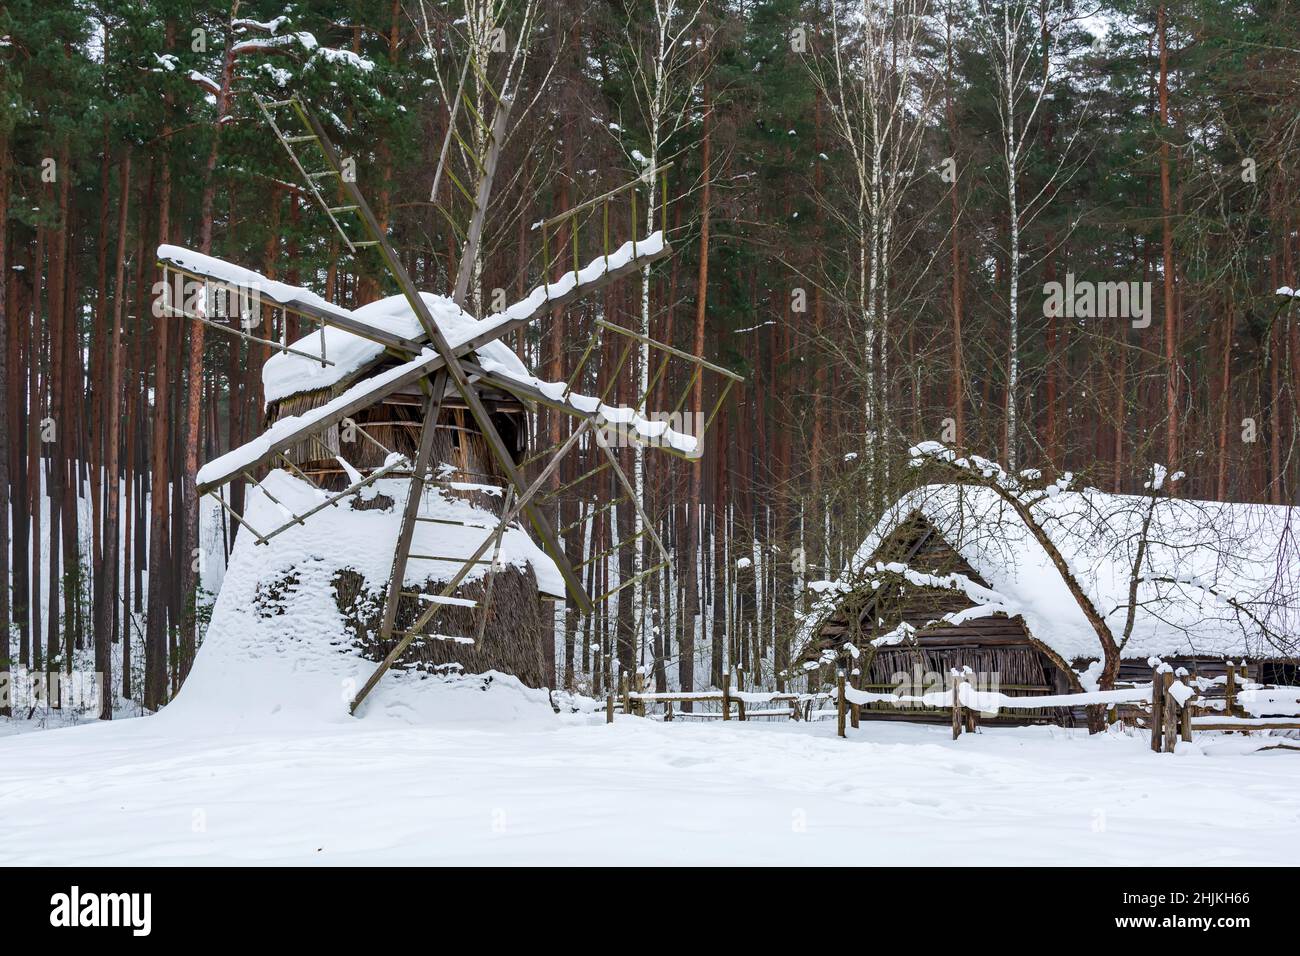 Vecchia casa di legno e mulino a vento coperto di neve in una foresta invernale. Foto Stock